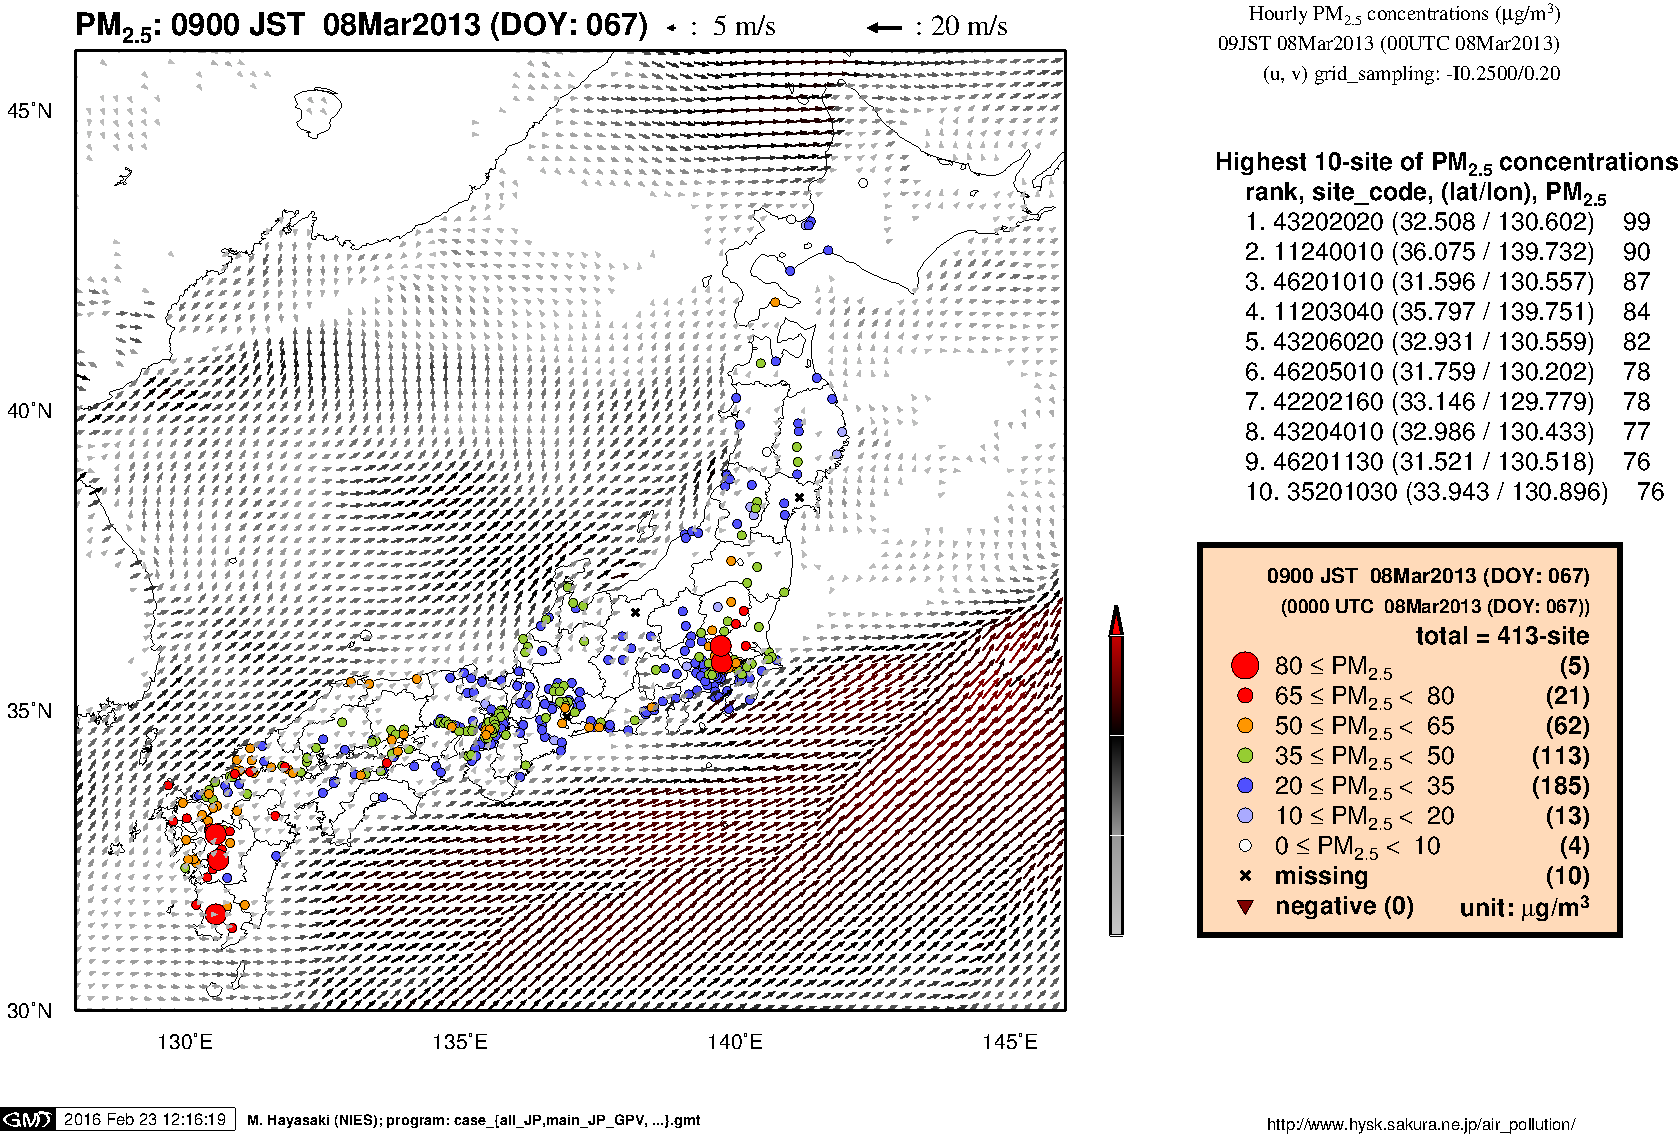 SPM concentration in western Japan (09JST 08Mar2013)